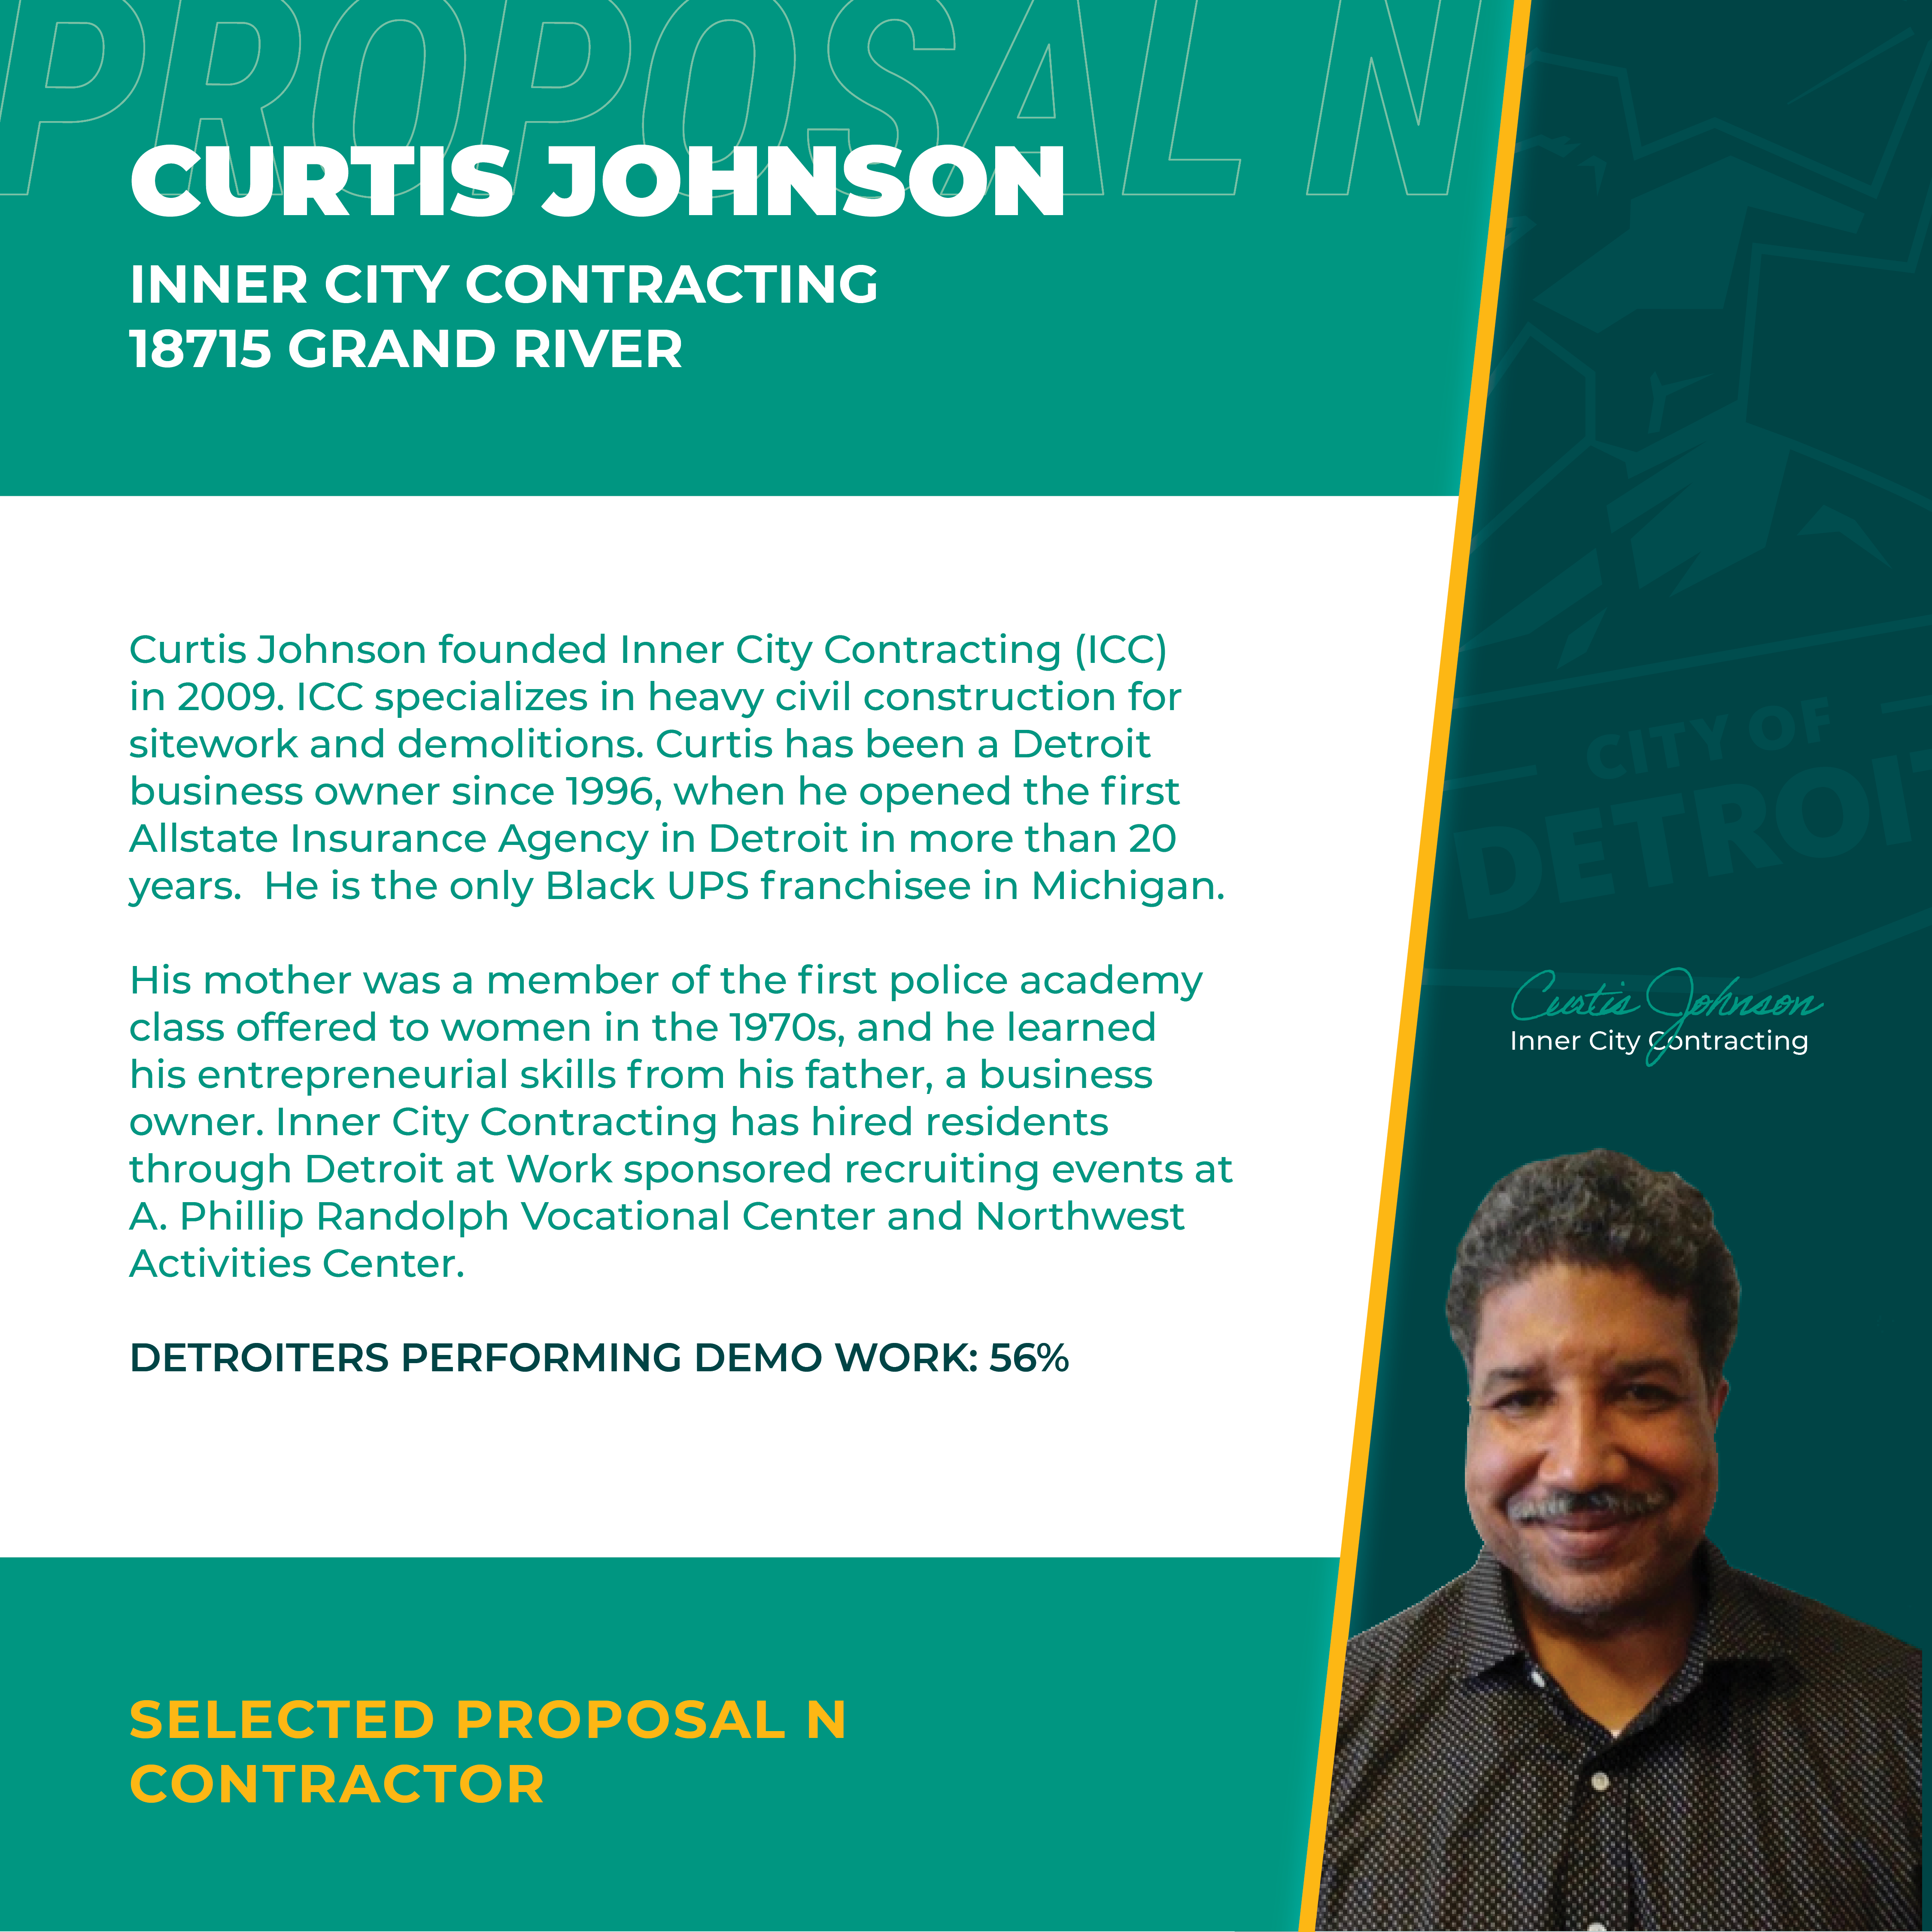 Proposal N - Curtis Johnson